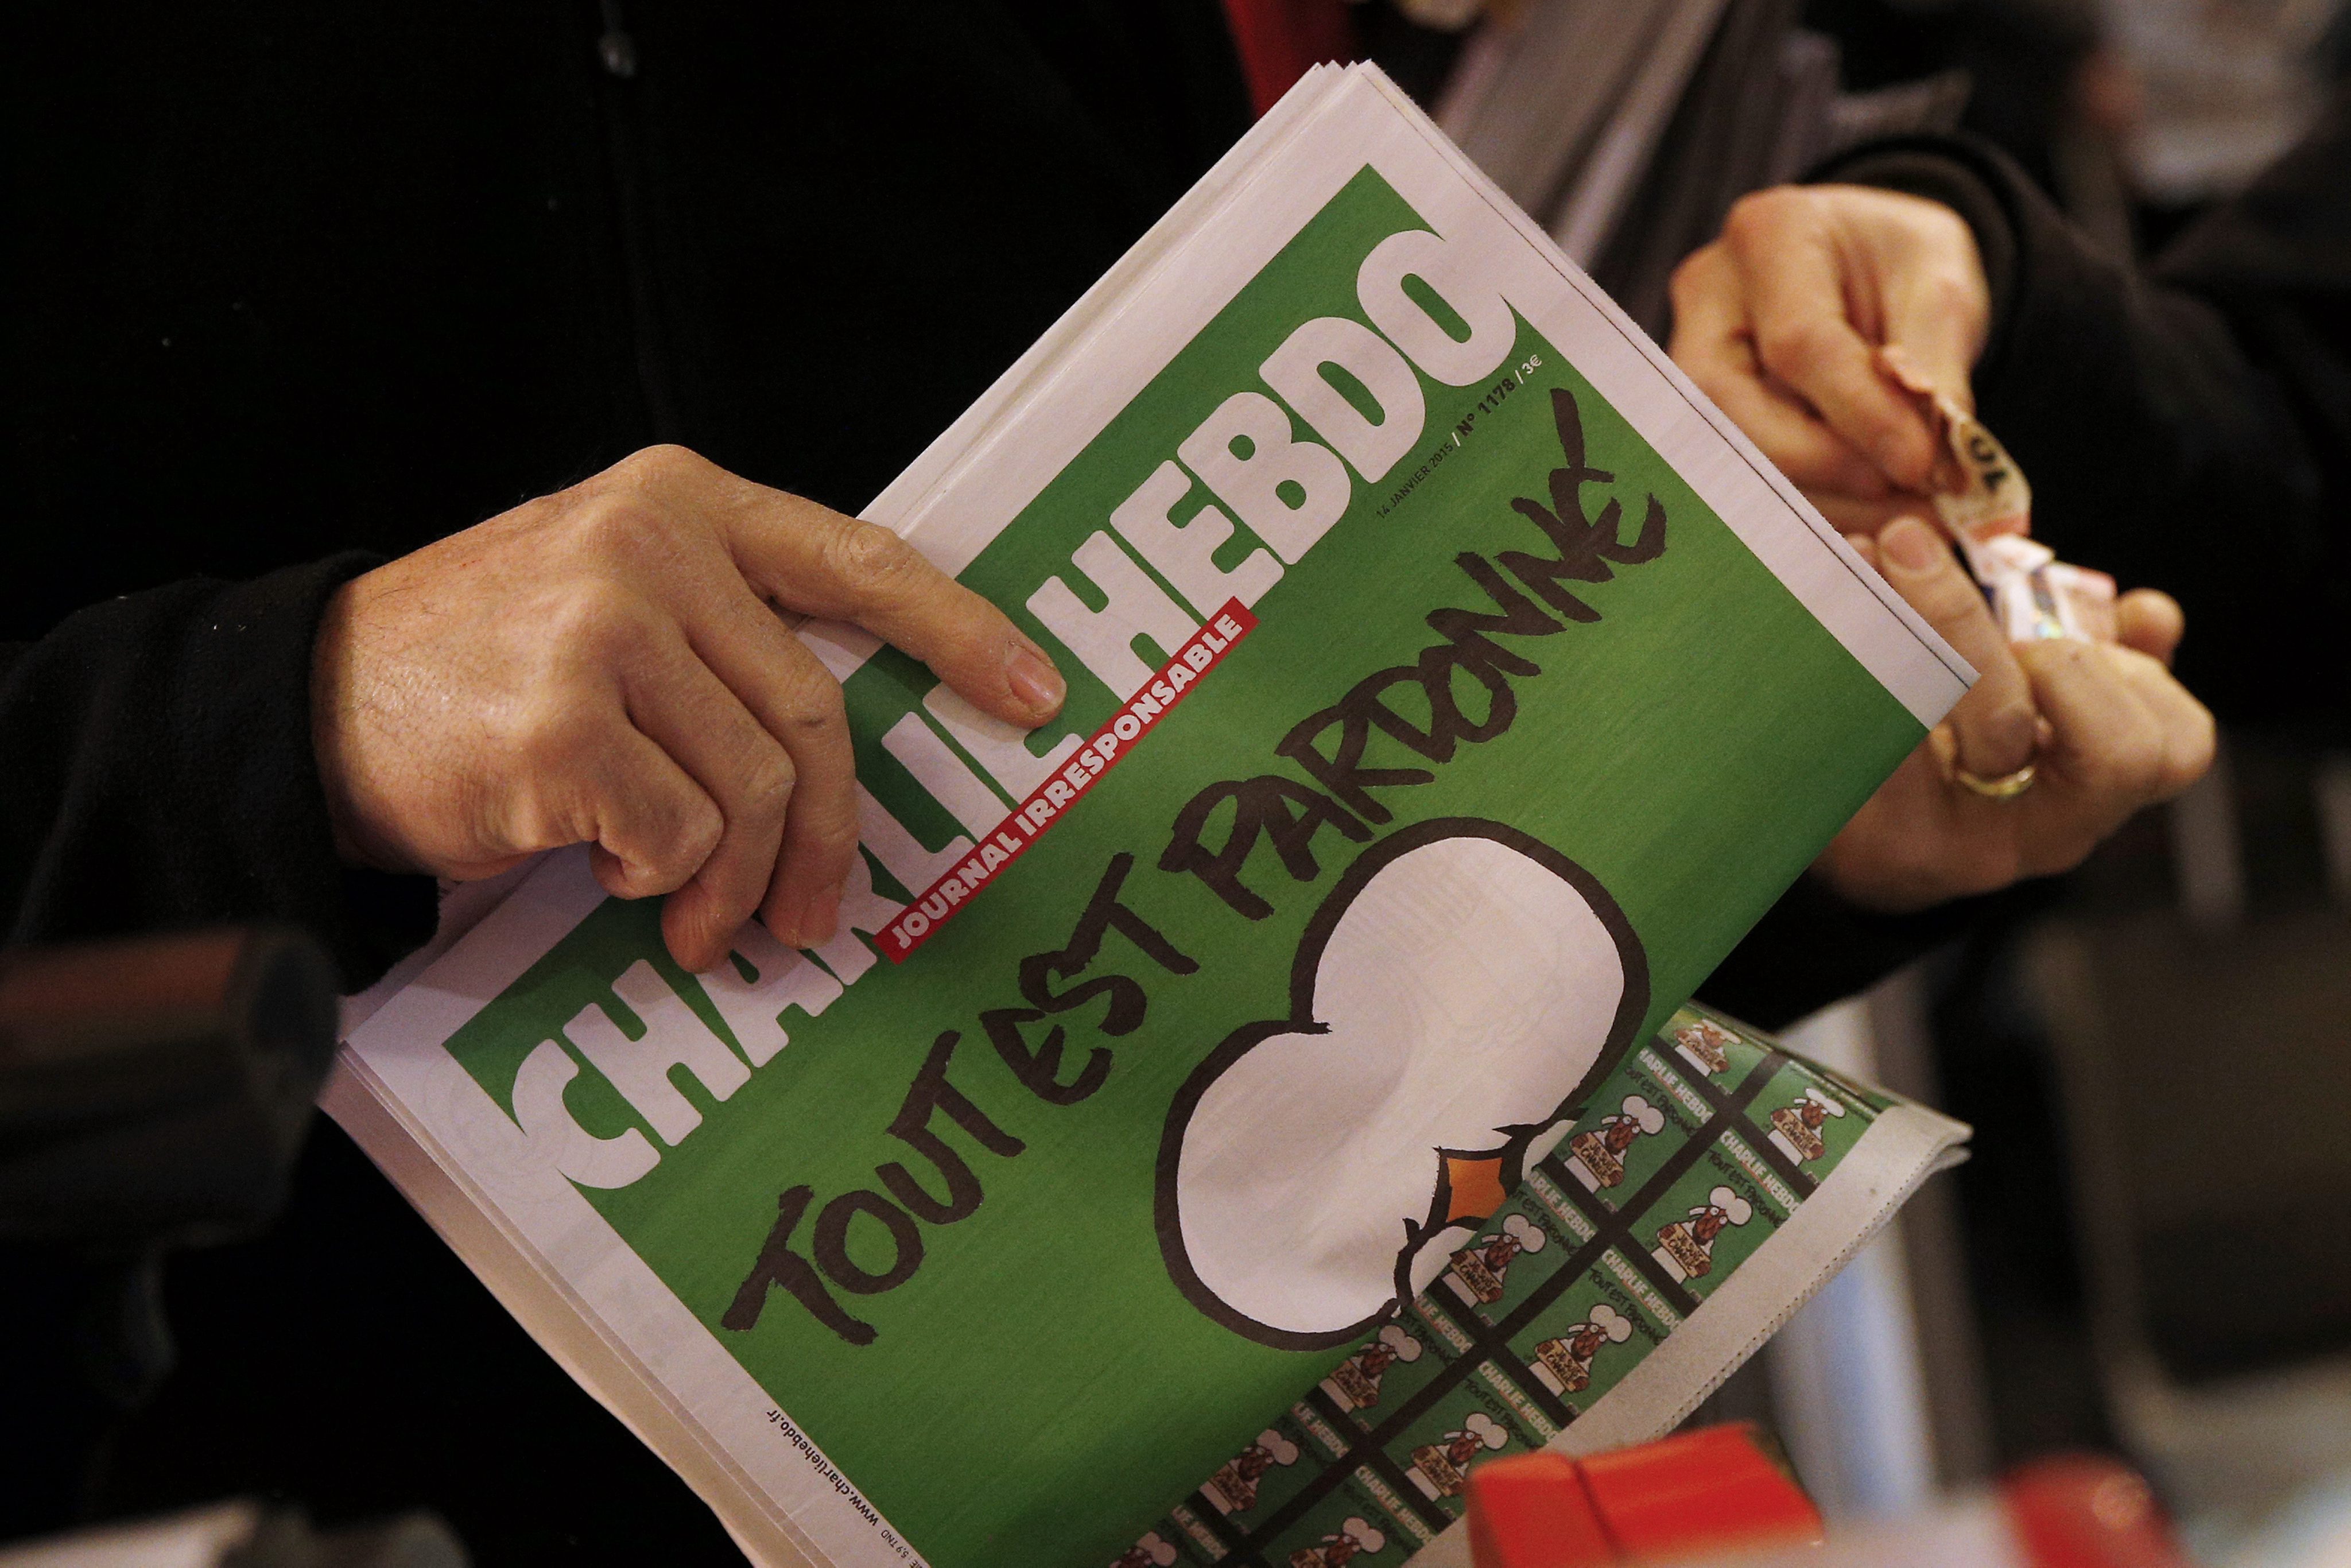 Εξαντλήθηκε και επανατυπώθηκε το τεύχος των επιζώντων του Charlie Hebdo